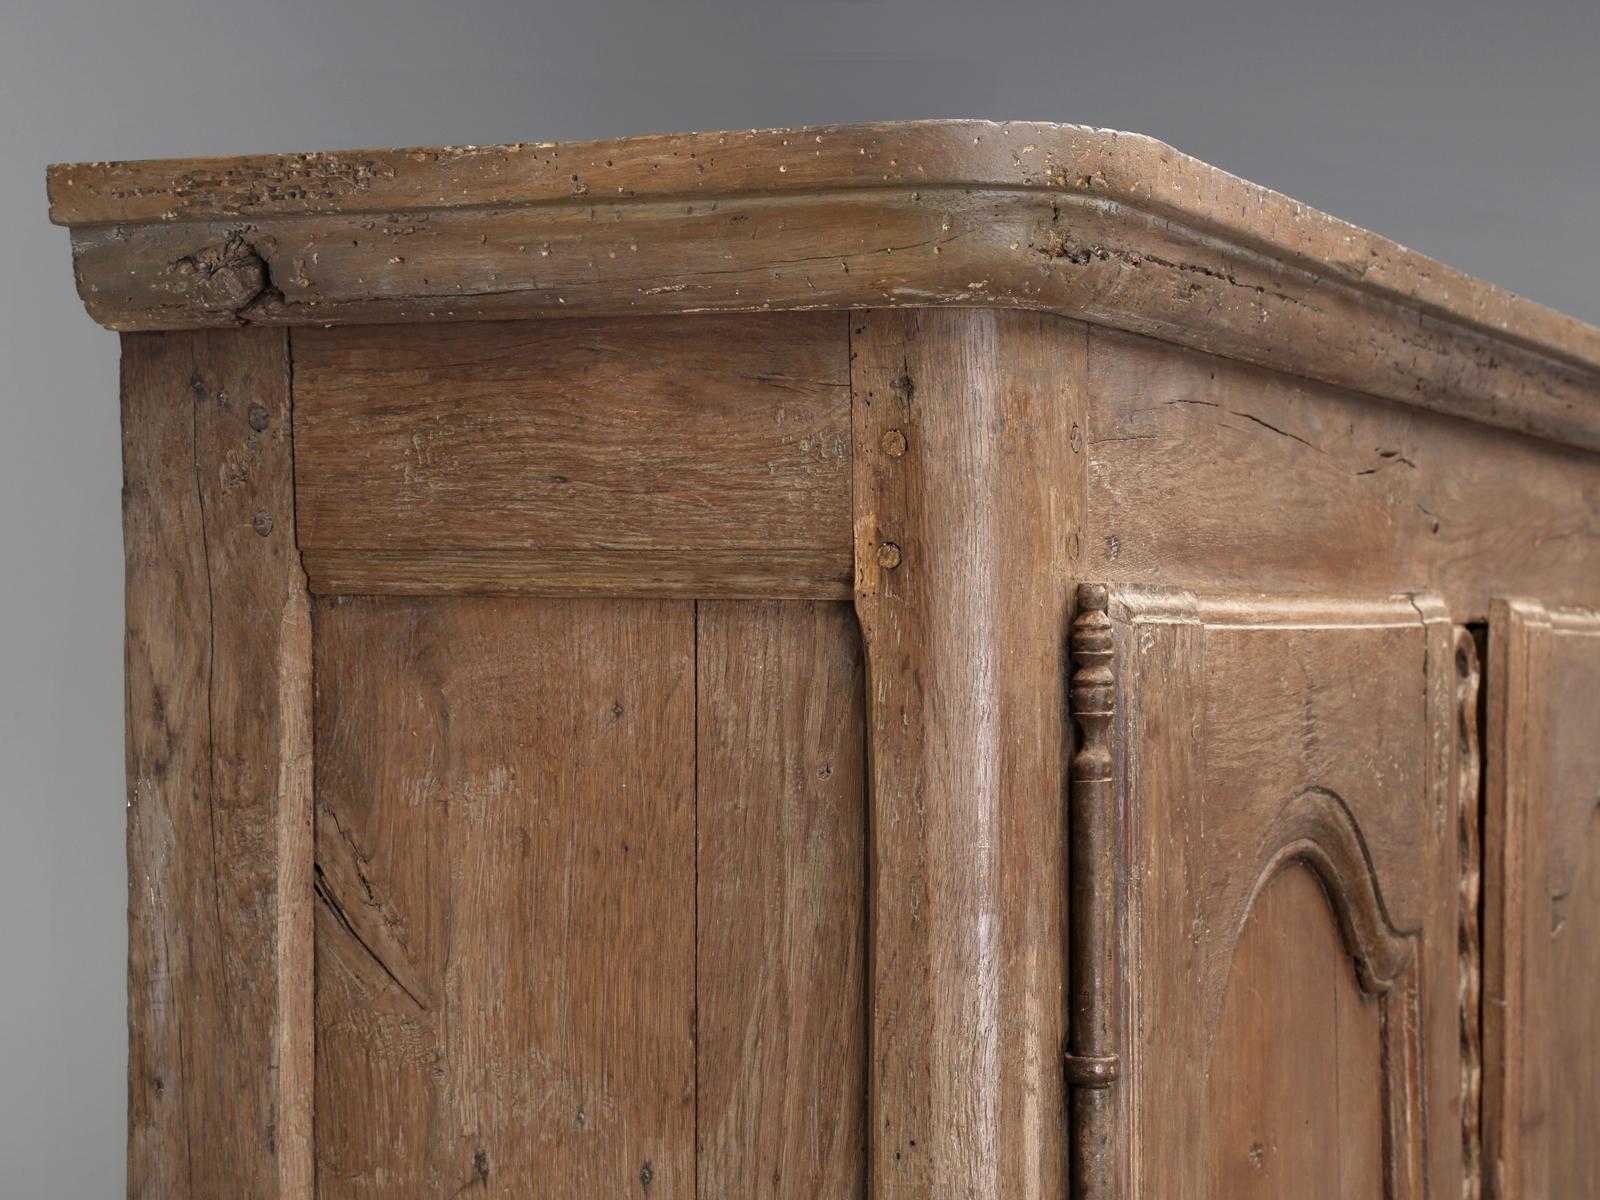 Dieser extrem seltene, antike französische Schrank, der aus dem Château de Loyat in der Bretagne stammt und vermutlich aus der Zeit um 1500 stammt, war in einem Zustand, von dem Antiquitätenhändler nur träumen können. Der französische Schrank sieht